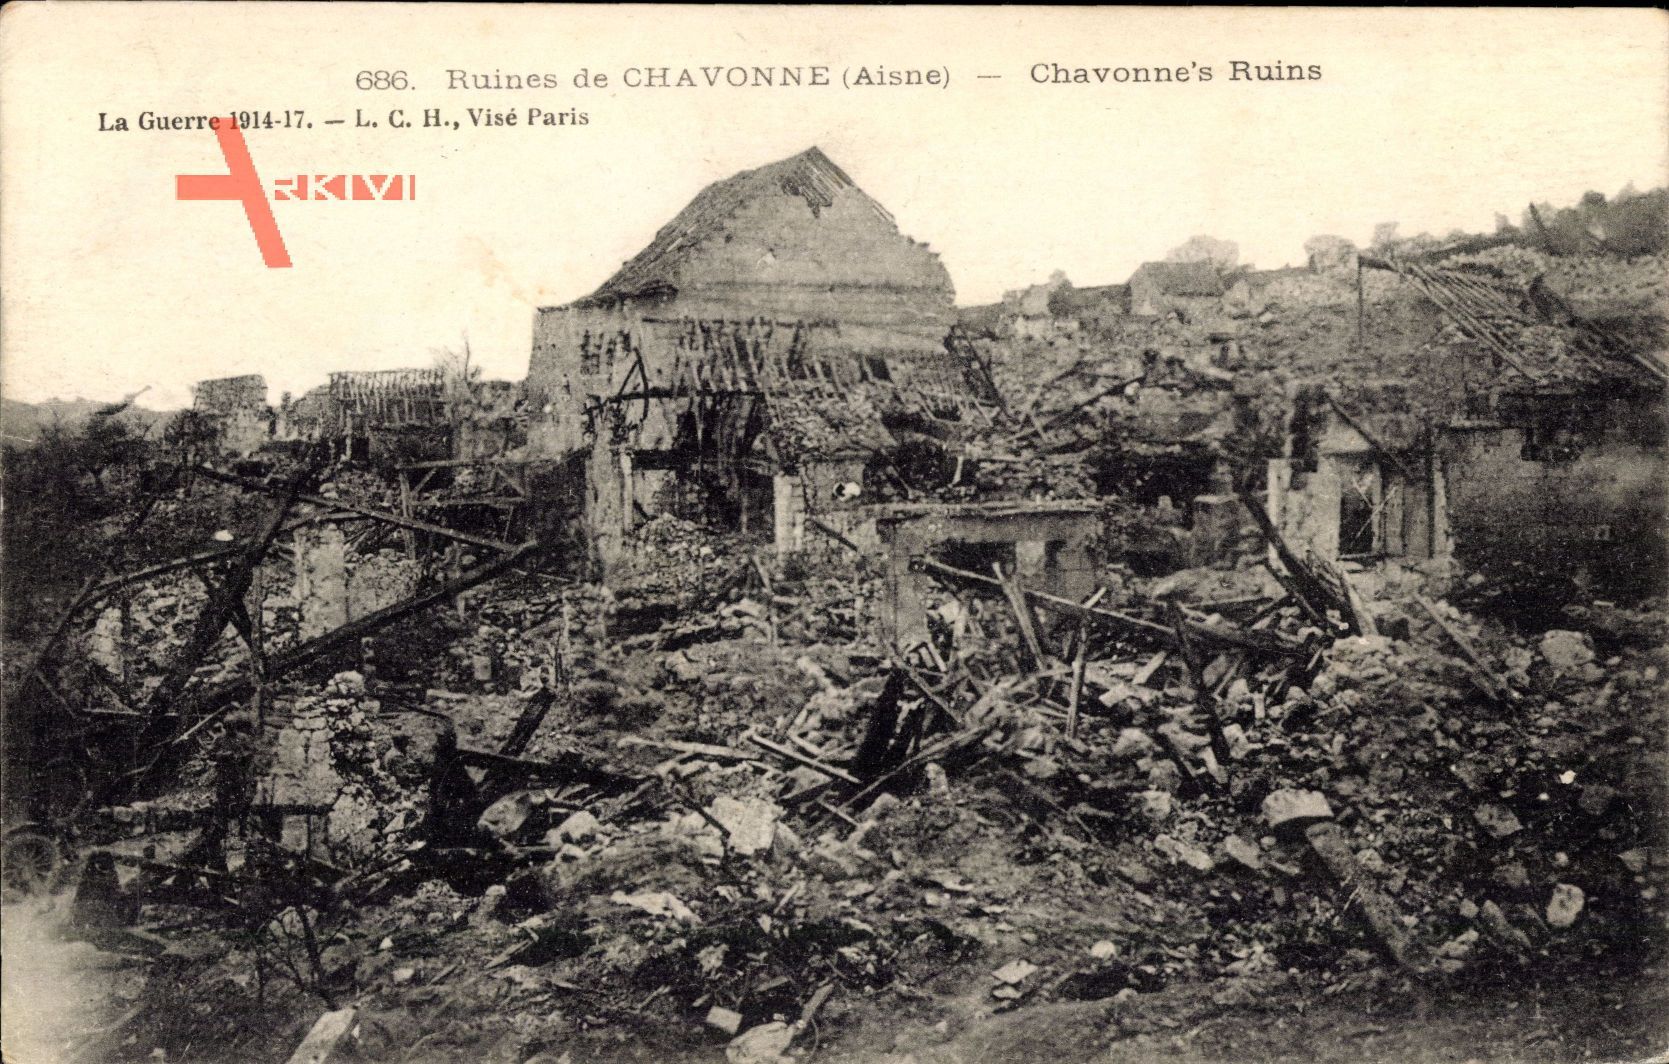 Chavonne Aisne, Ruines, Stadt in Trümmern, Erster Weltkrieg